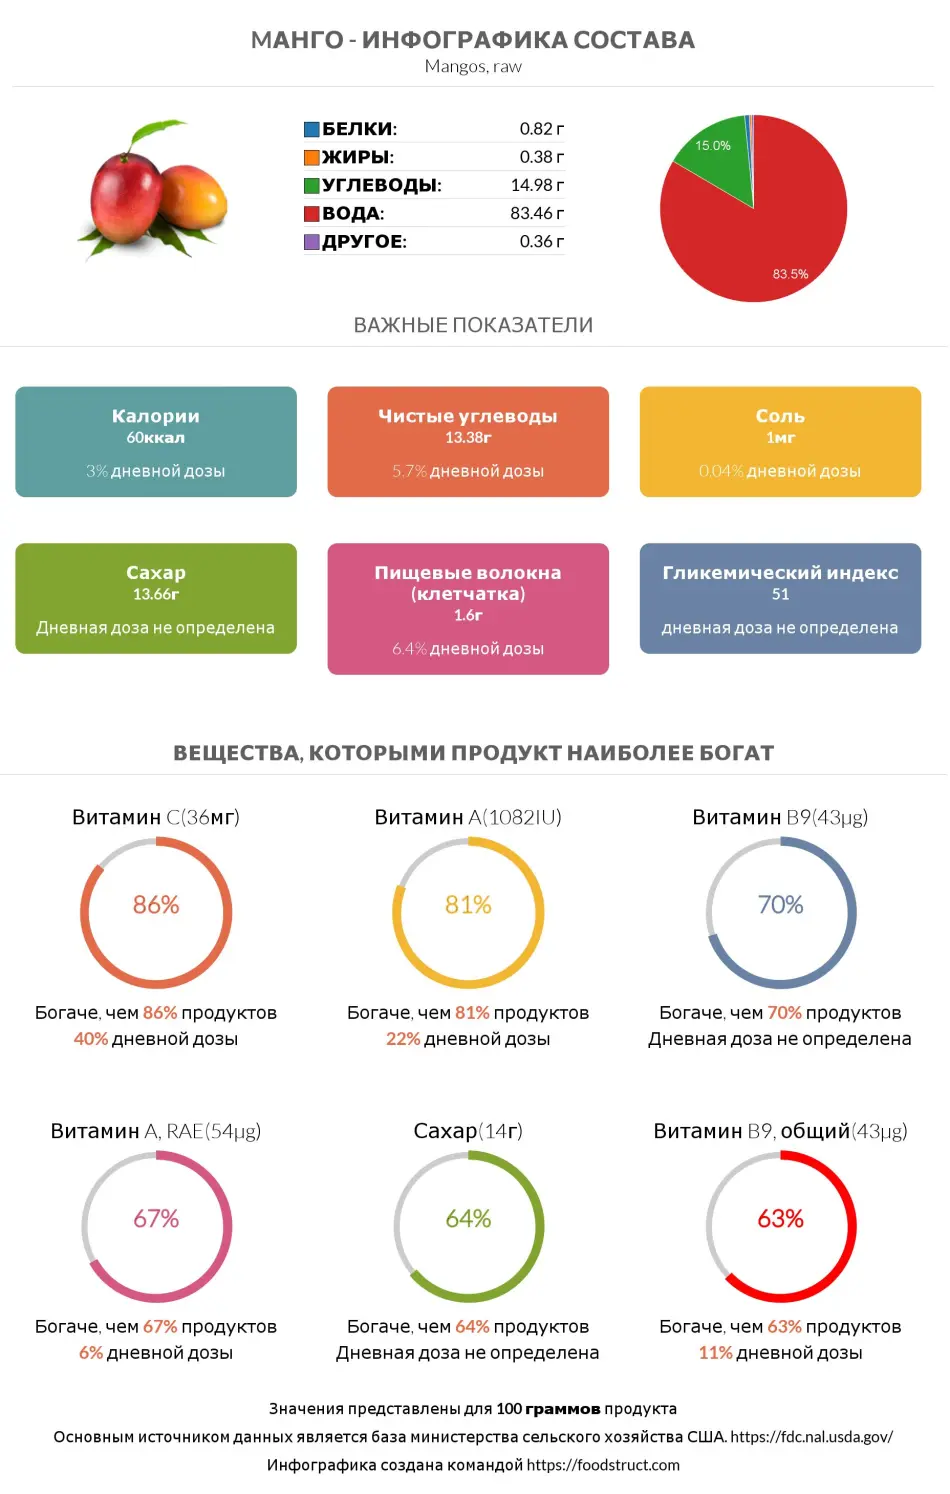 Инфографика состава и питательности для продукта Mанго